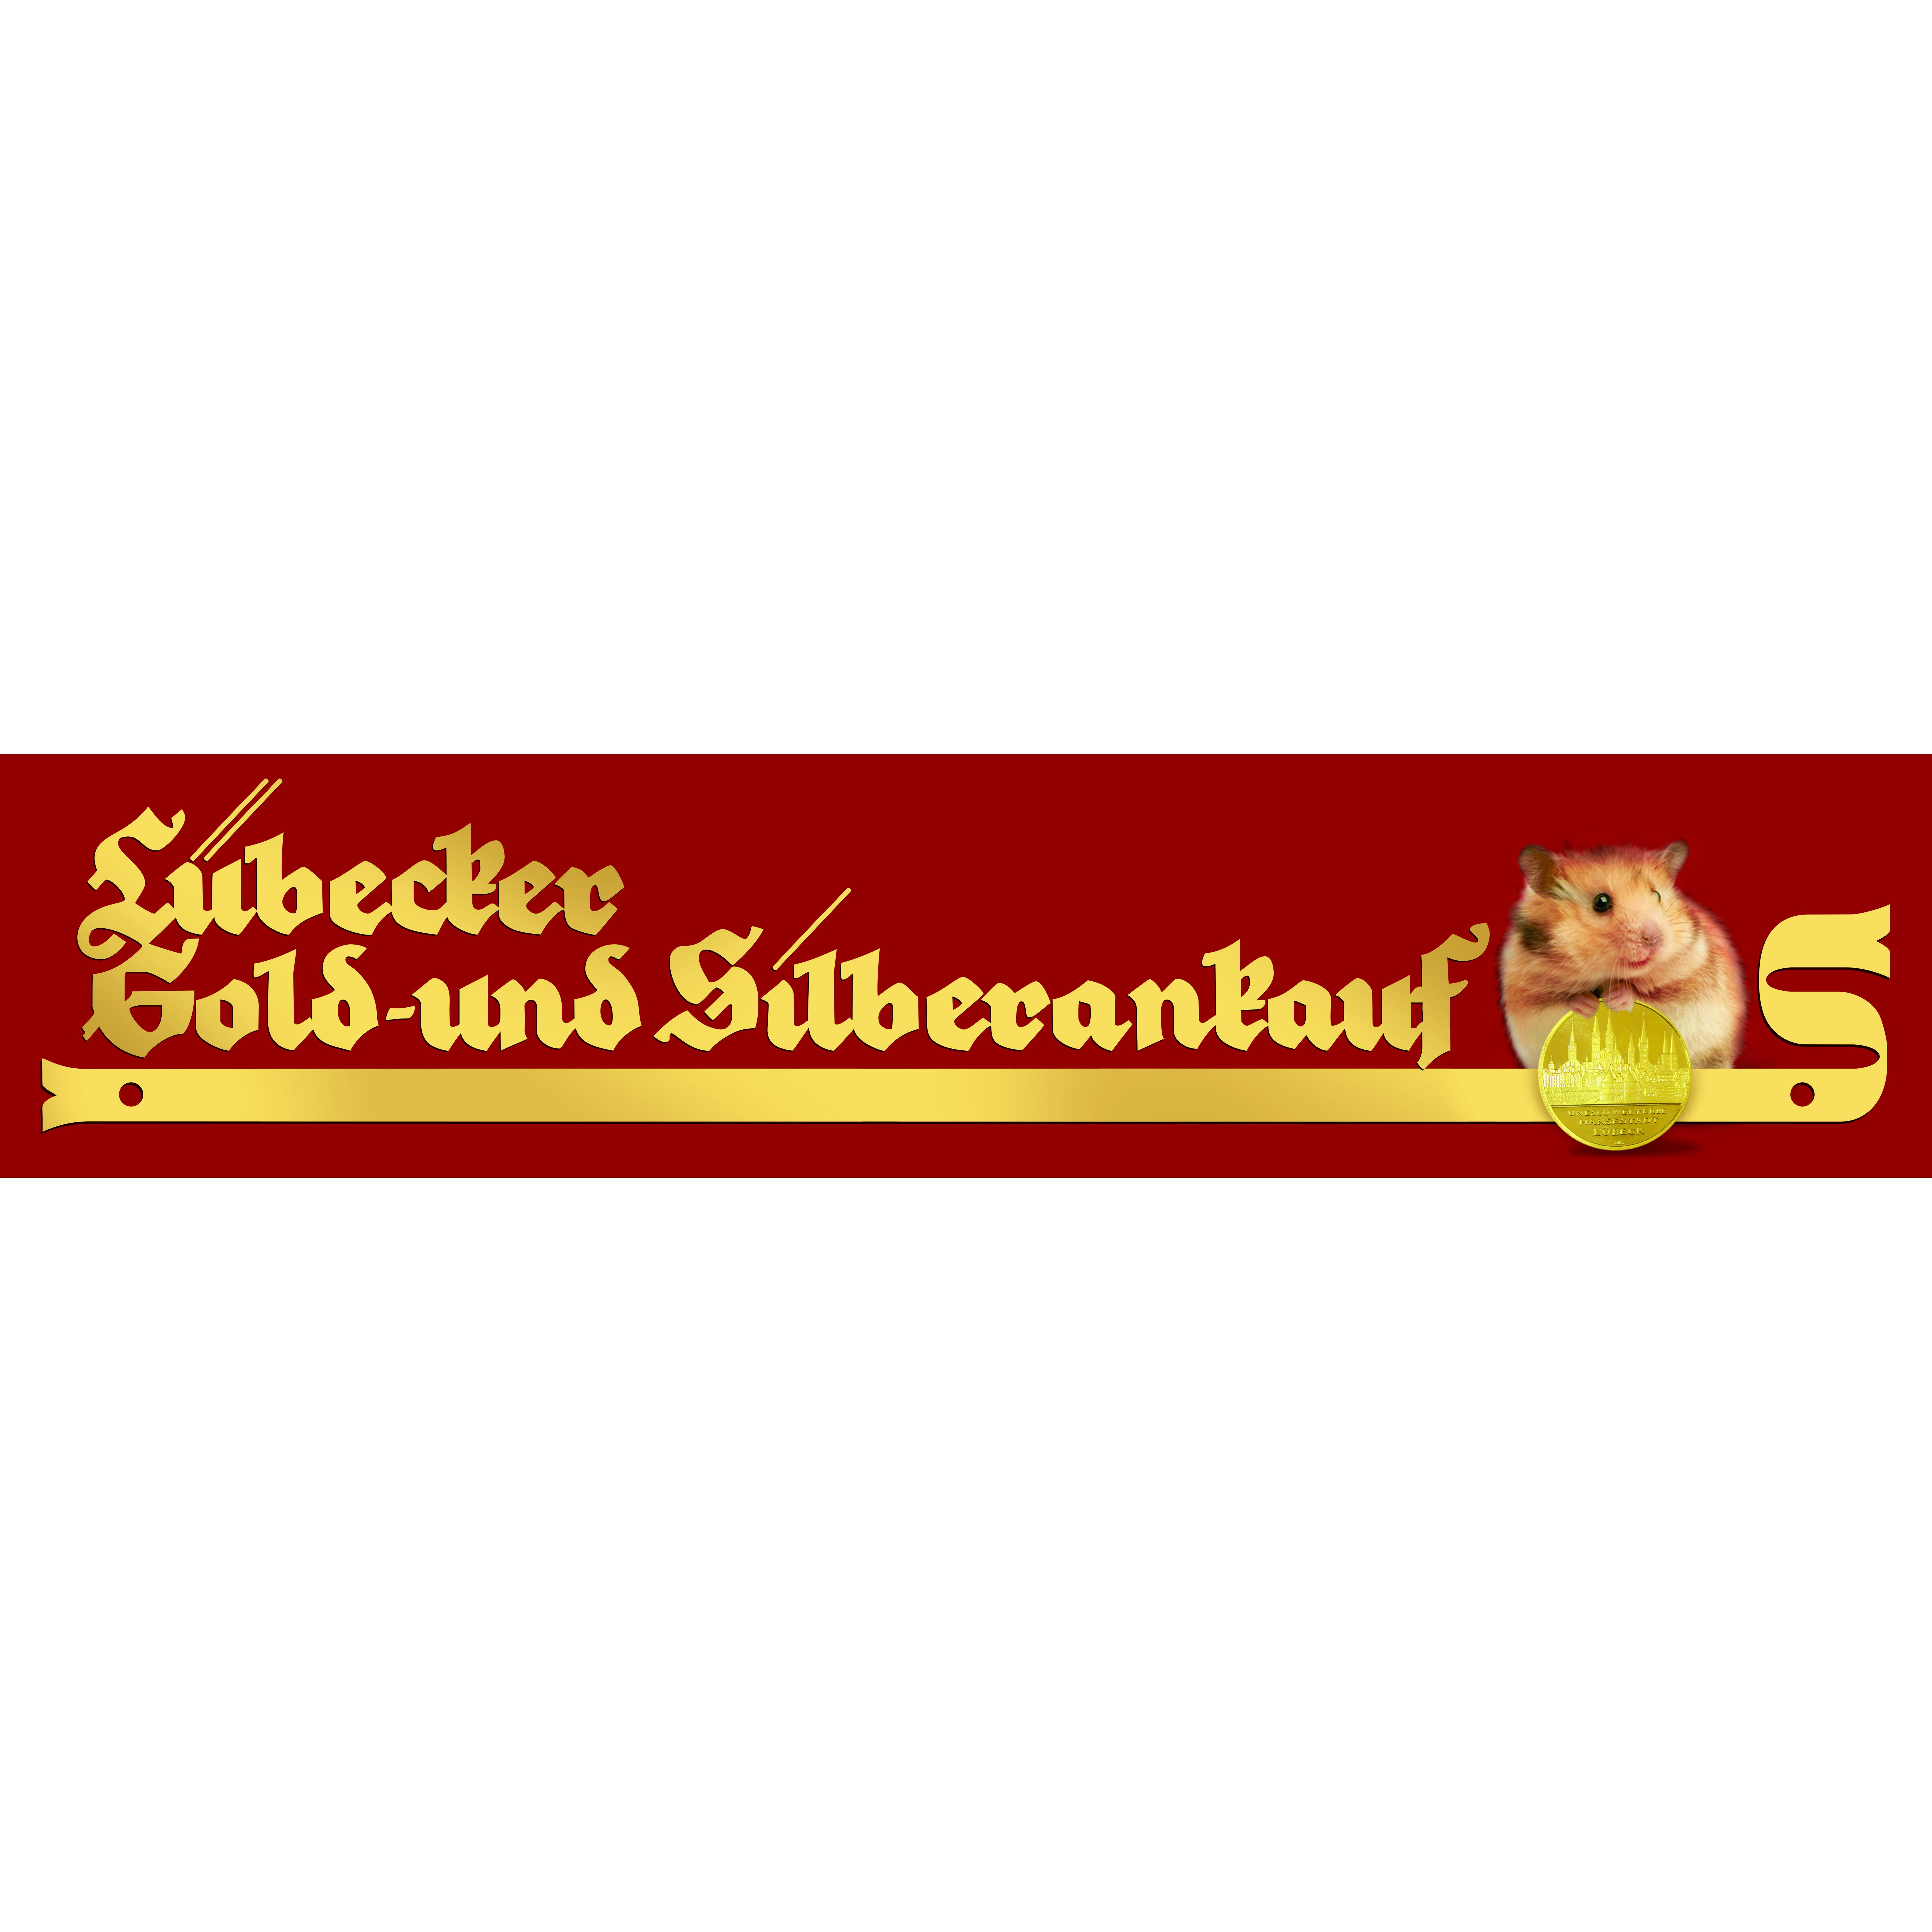 Lübecker Gold- und Silberankauf in Lübeck